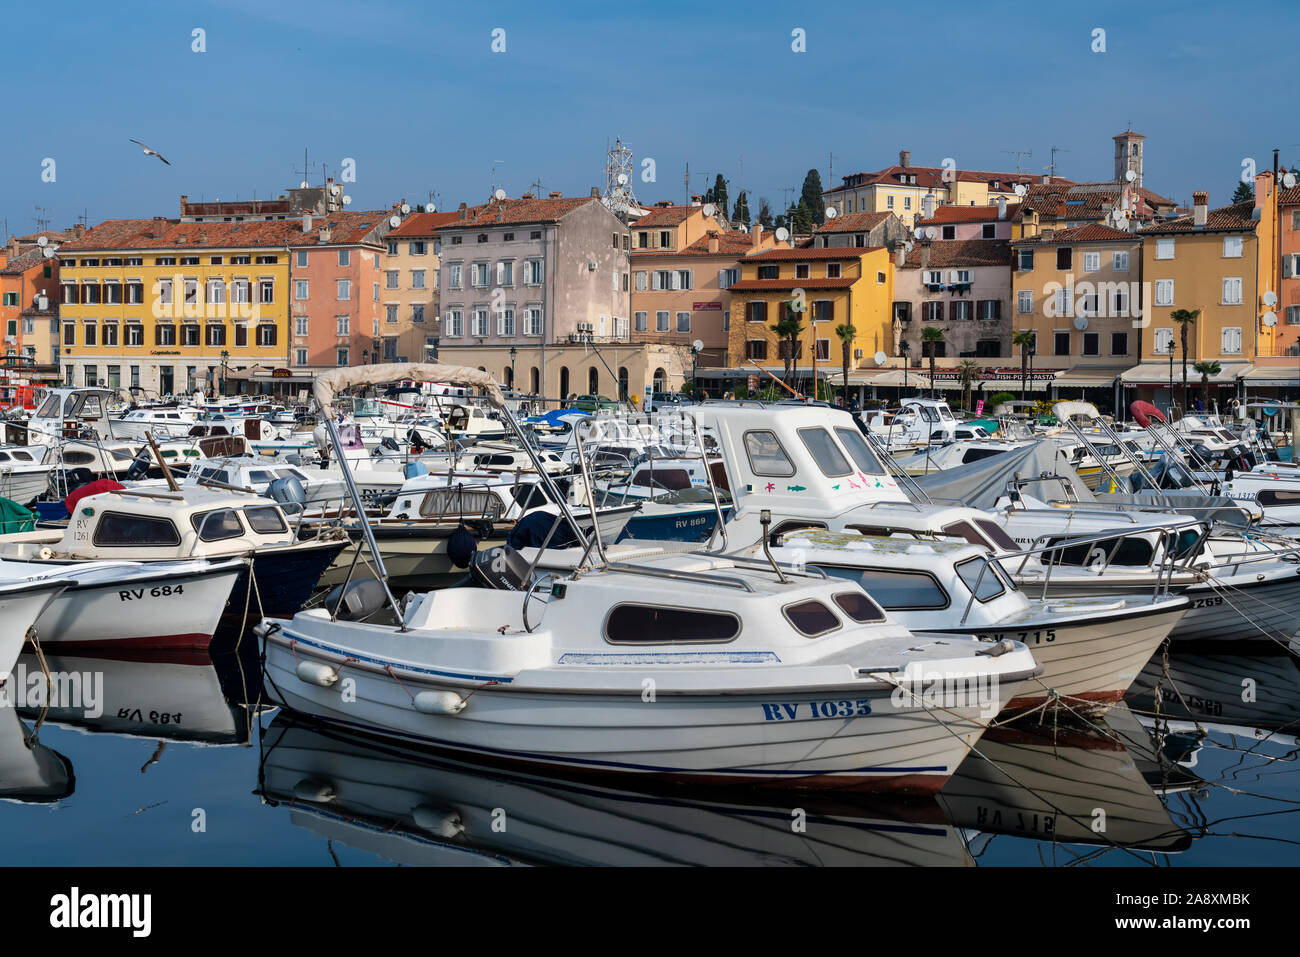 Gli edifici colorati e il villaggio skyline con piacere e barche da pesca a Rovigno, Croazia, Istria. Foto Stock